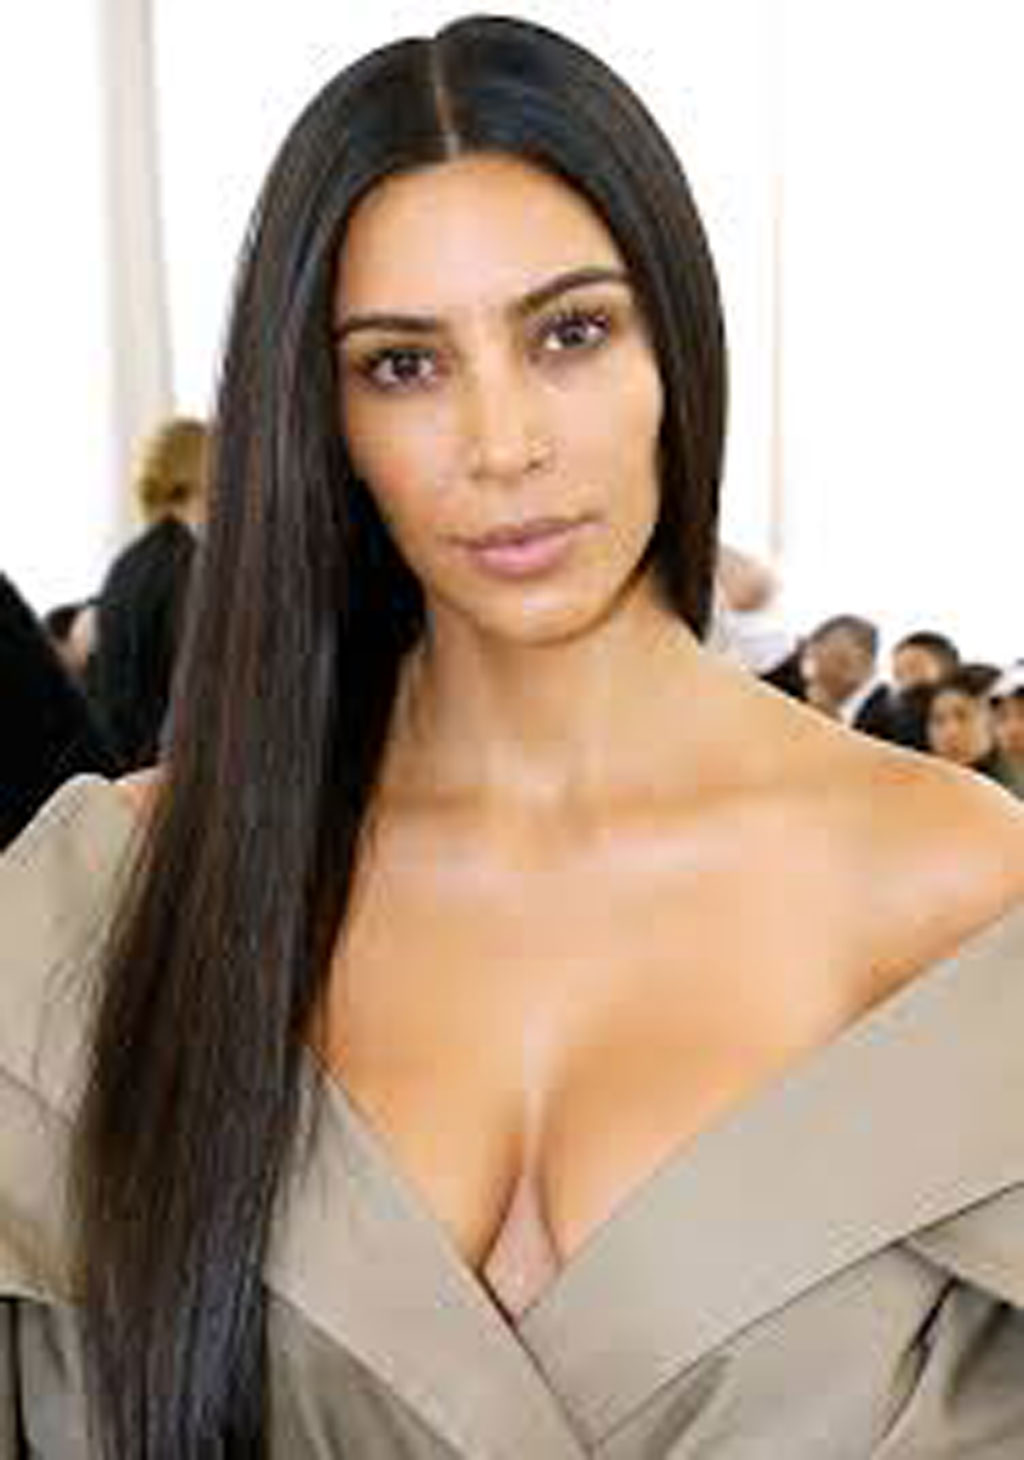 Kim Kardashian “khoe” cuộc sống thượng hạng